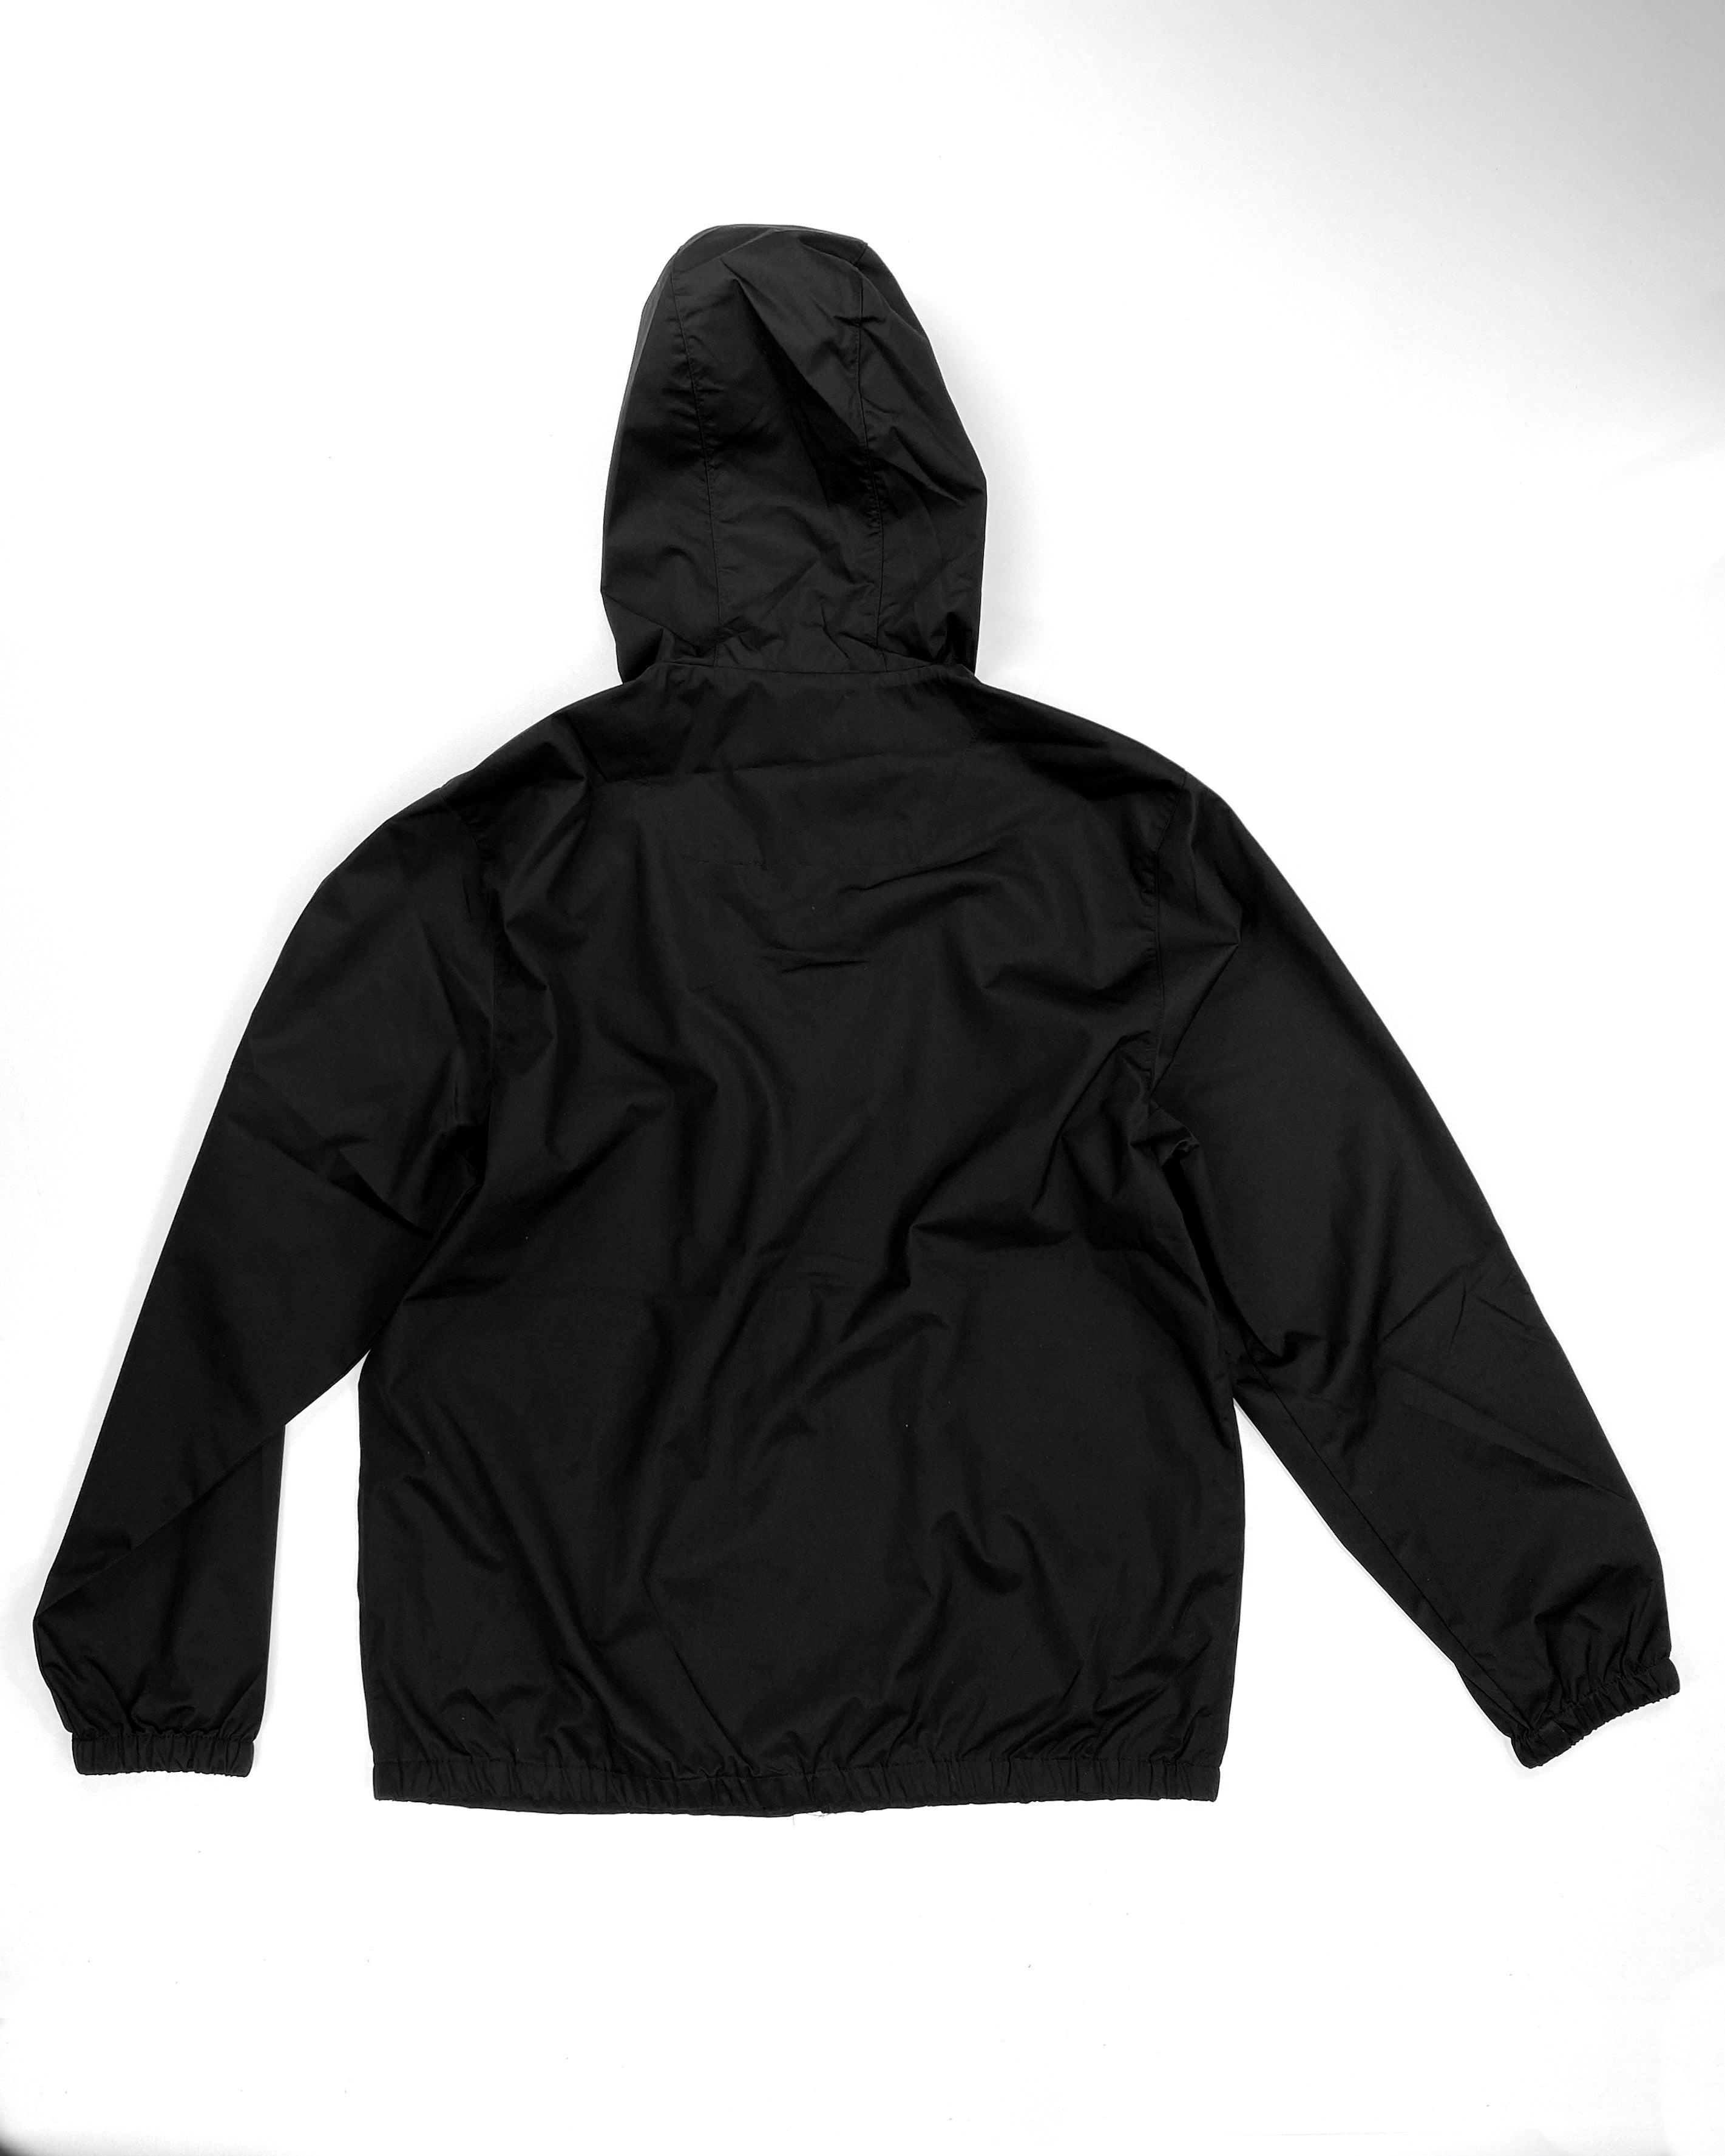 Hybrid Hooded Zip-Up Jacket - Black - GHOSTSHIP.Supply